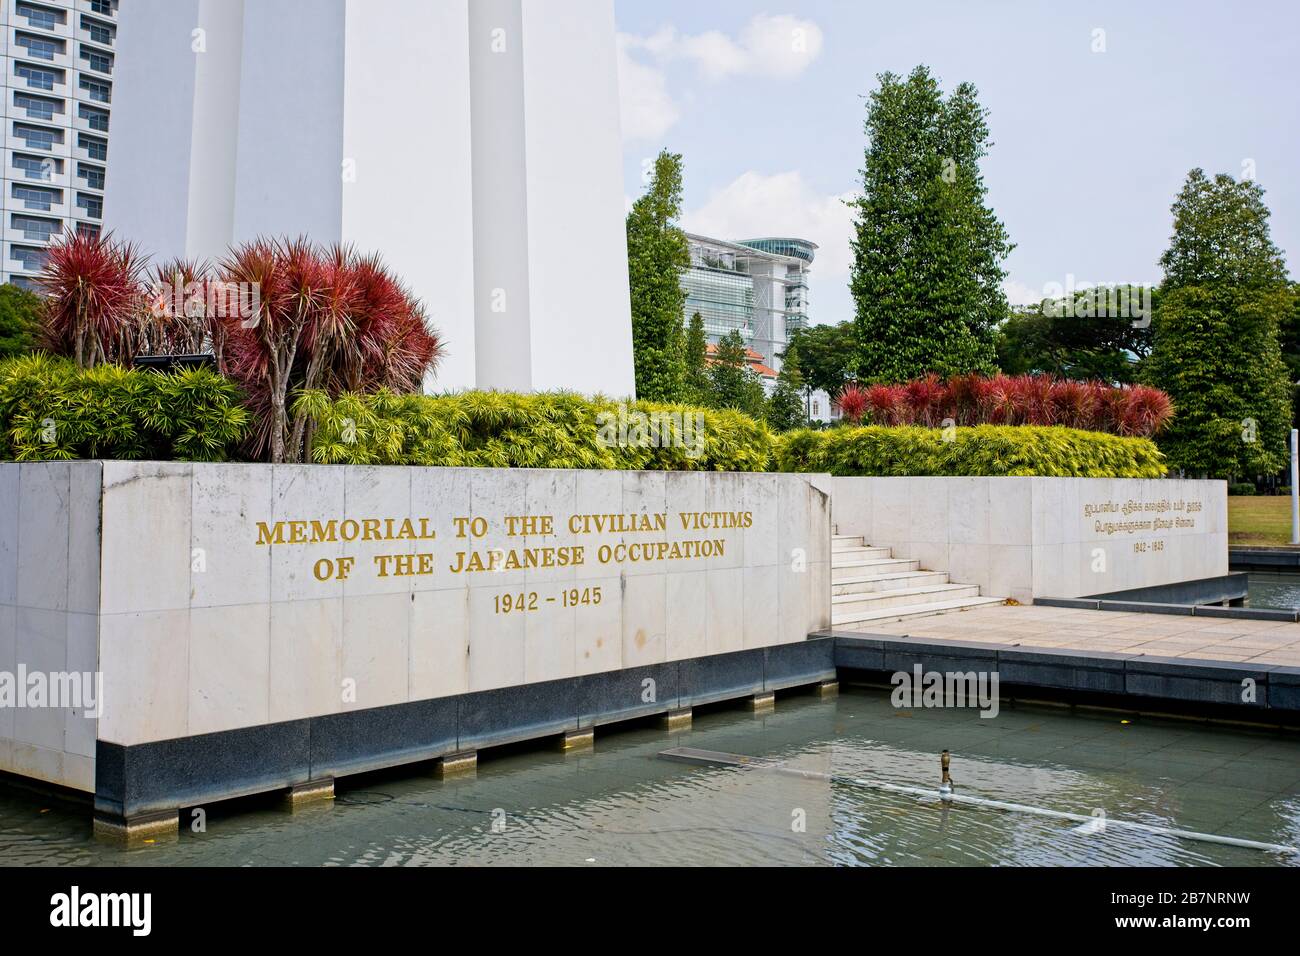 Monumento commemorativo di guerra a Singapore per commemorare le vittime civili dell'occupazione giapponese durante la seconda guerra mondiale Foto Stock